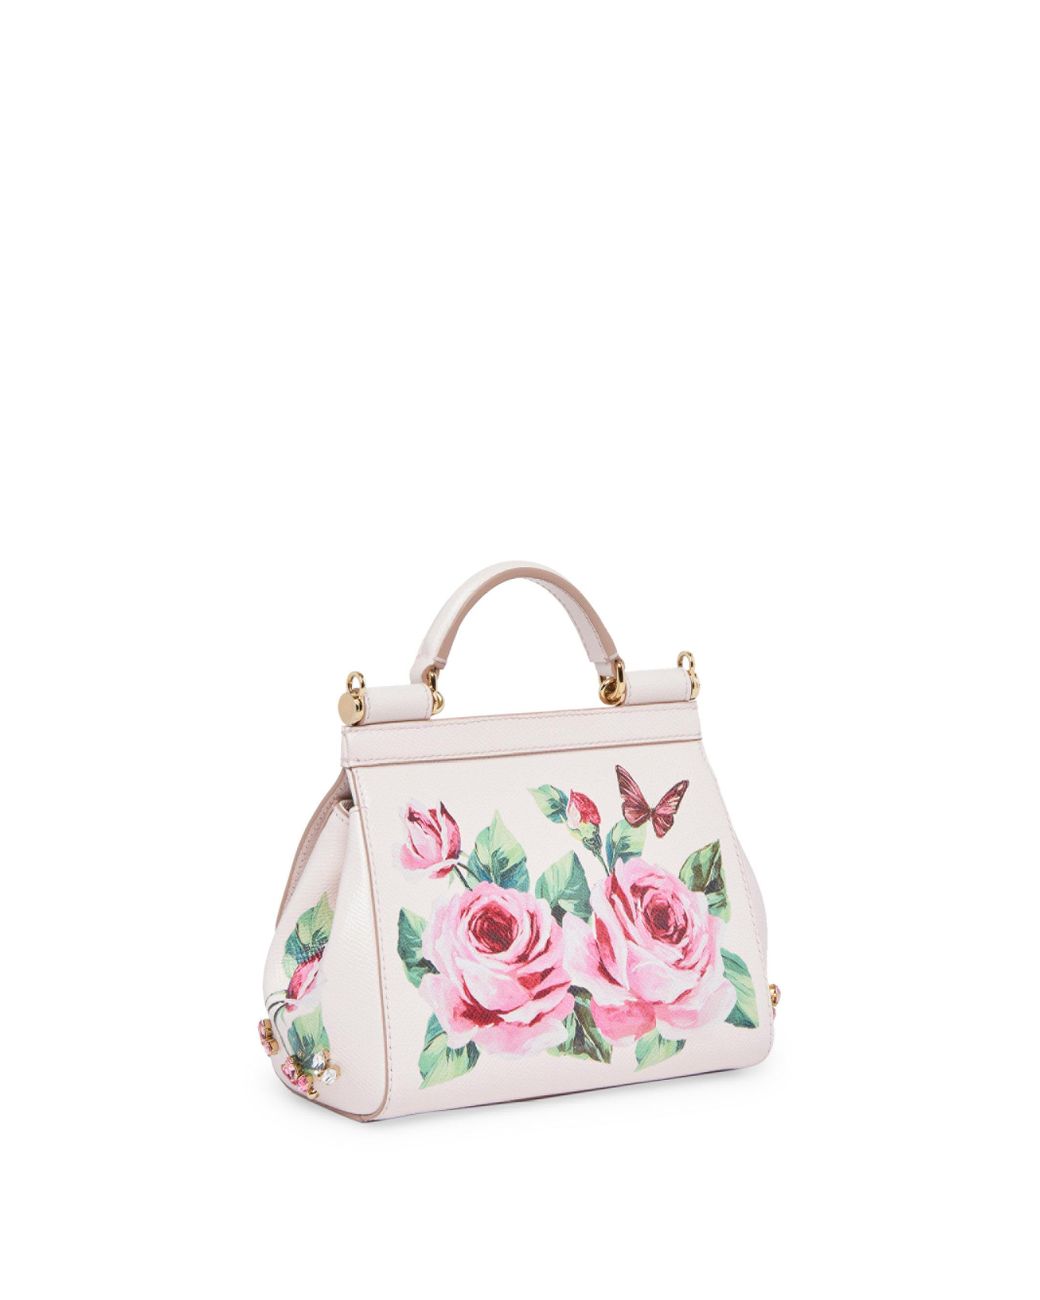 Dolce & Gabbana Kids Leather Rose Print Shoulder Bag